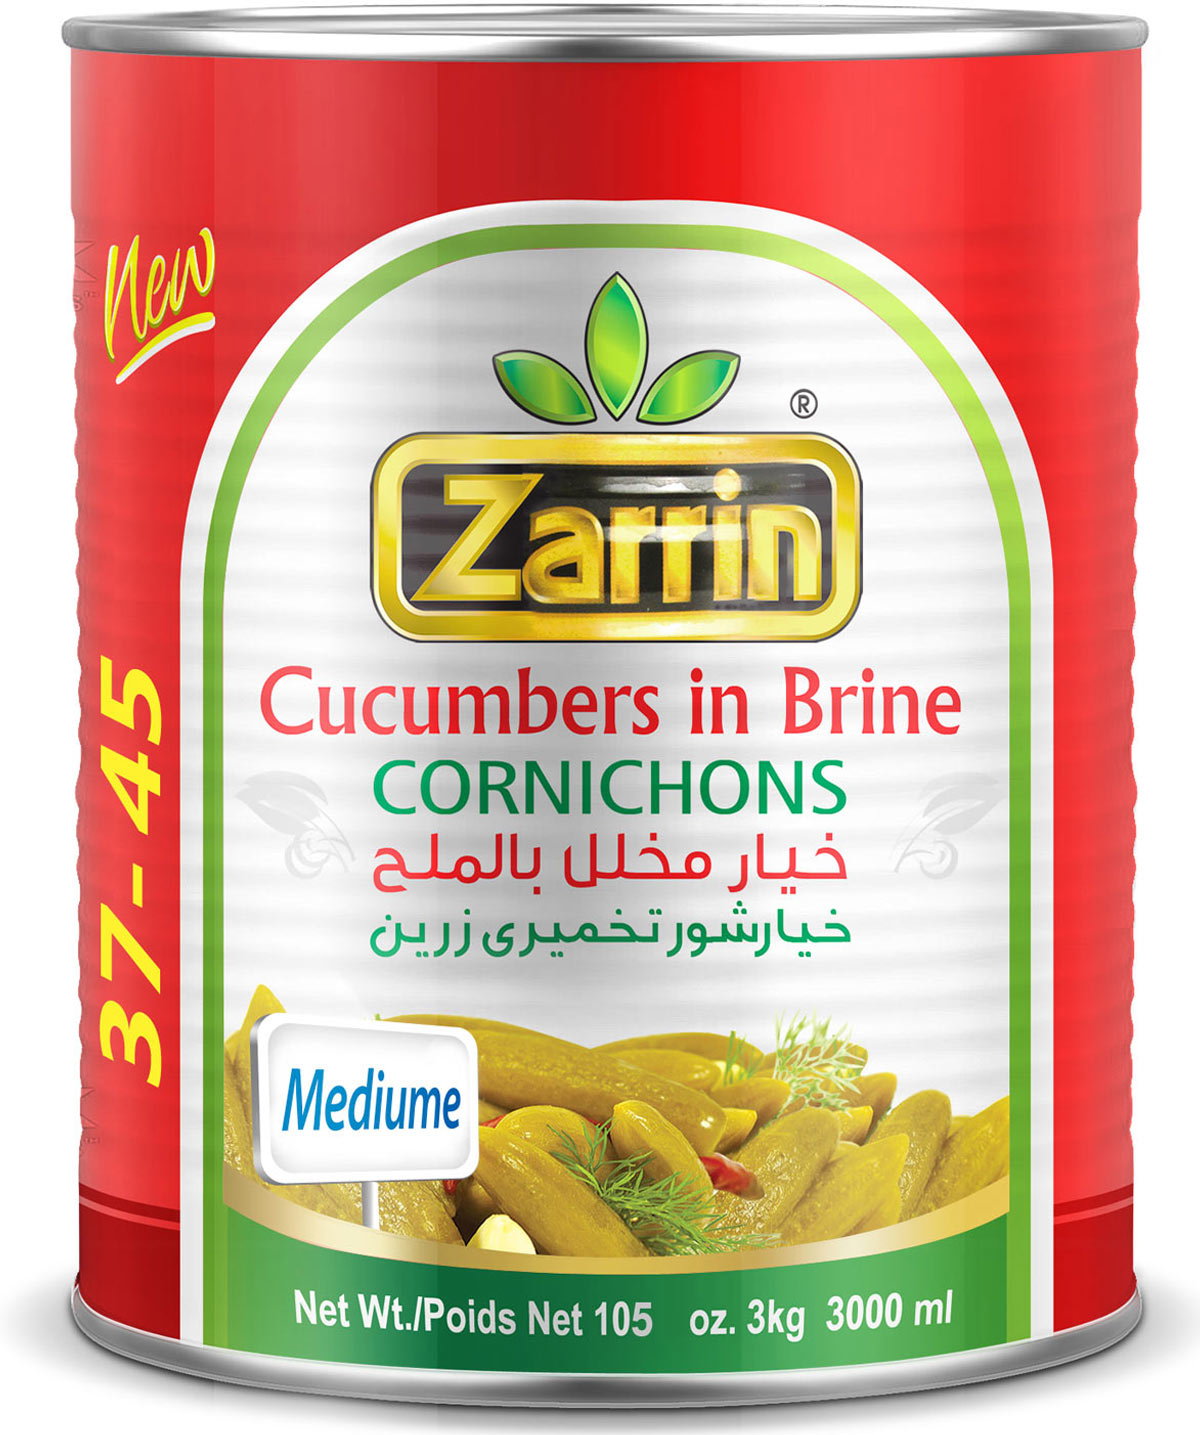 Zarrin pickled medium cucumbers in can 37-45 by Zarrin.